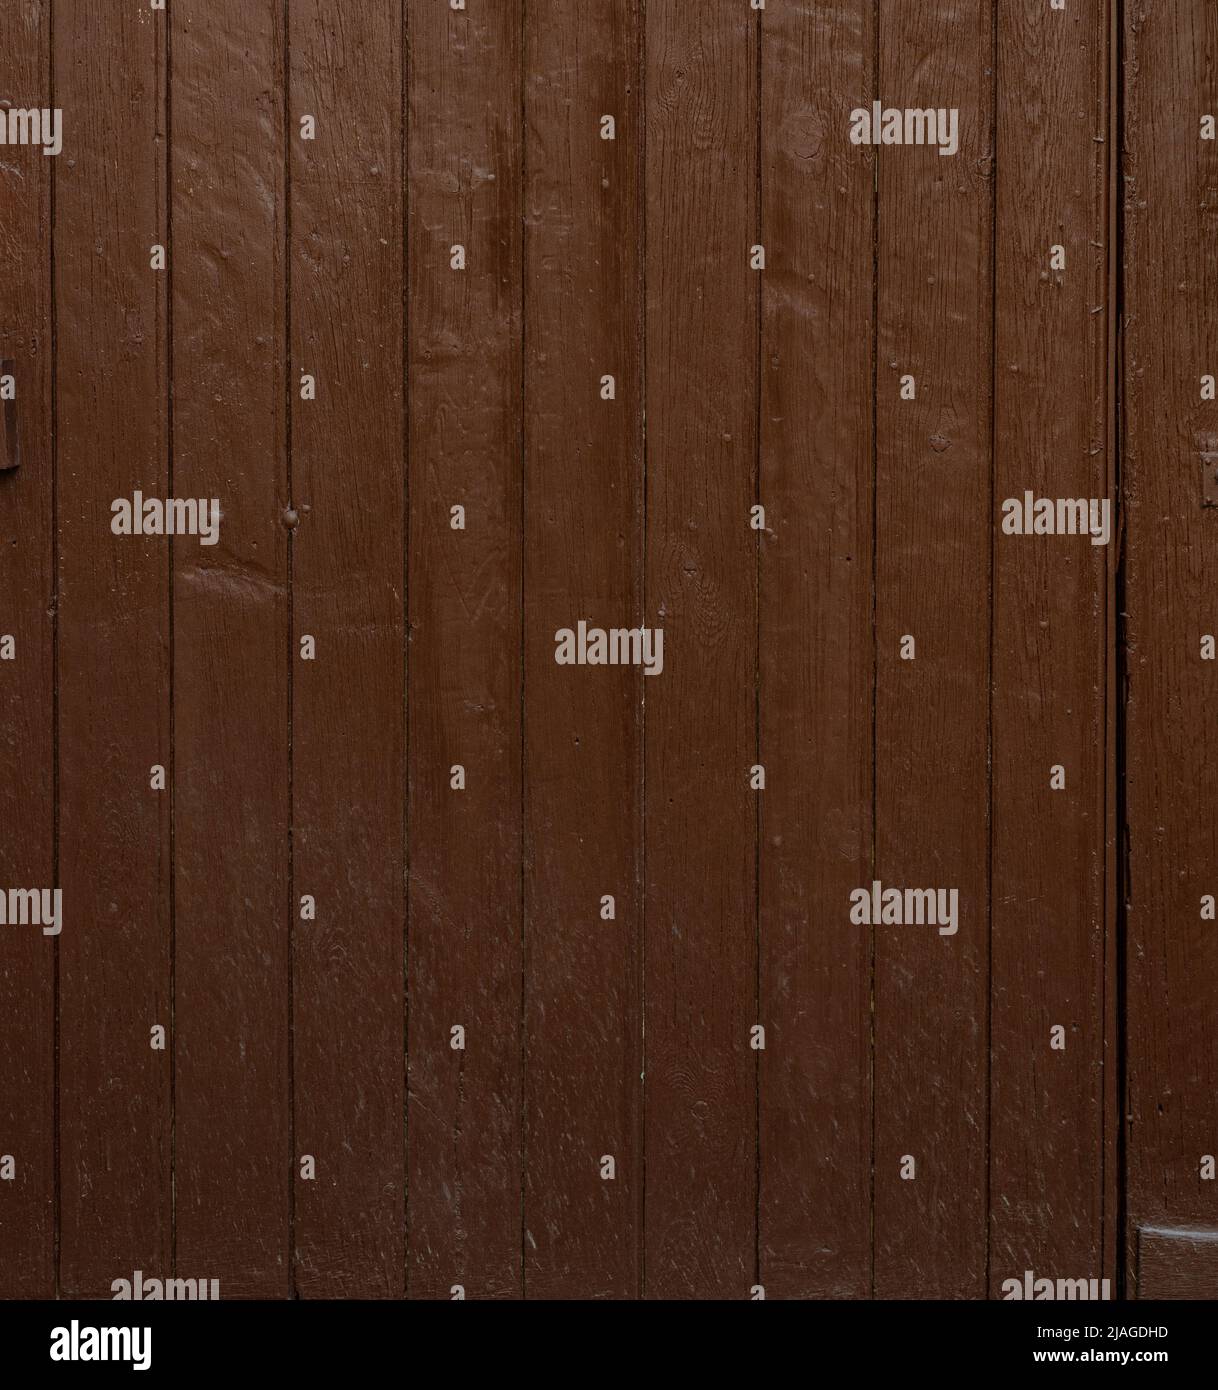 arrière-plan panneau en bois peint, brun foncé texture sale .grunge Banque D'Images